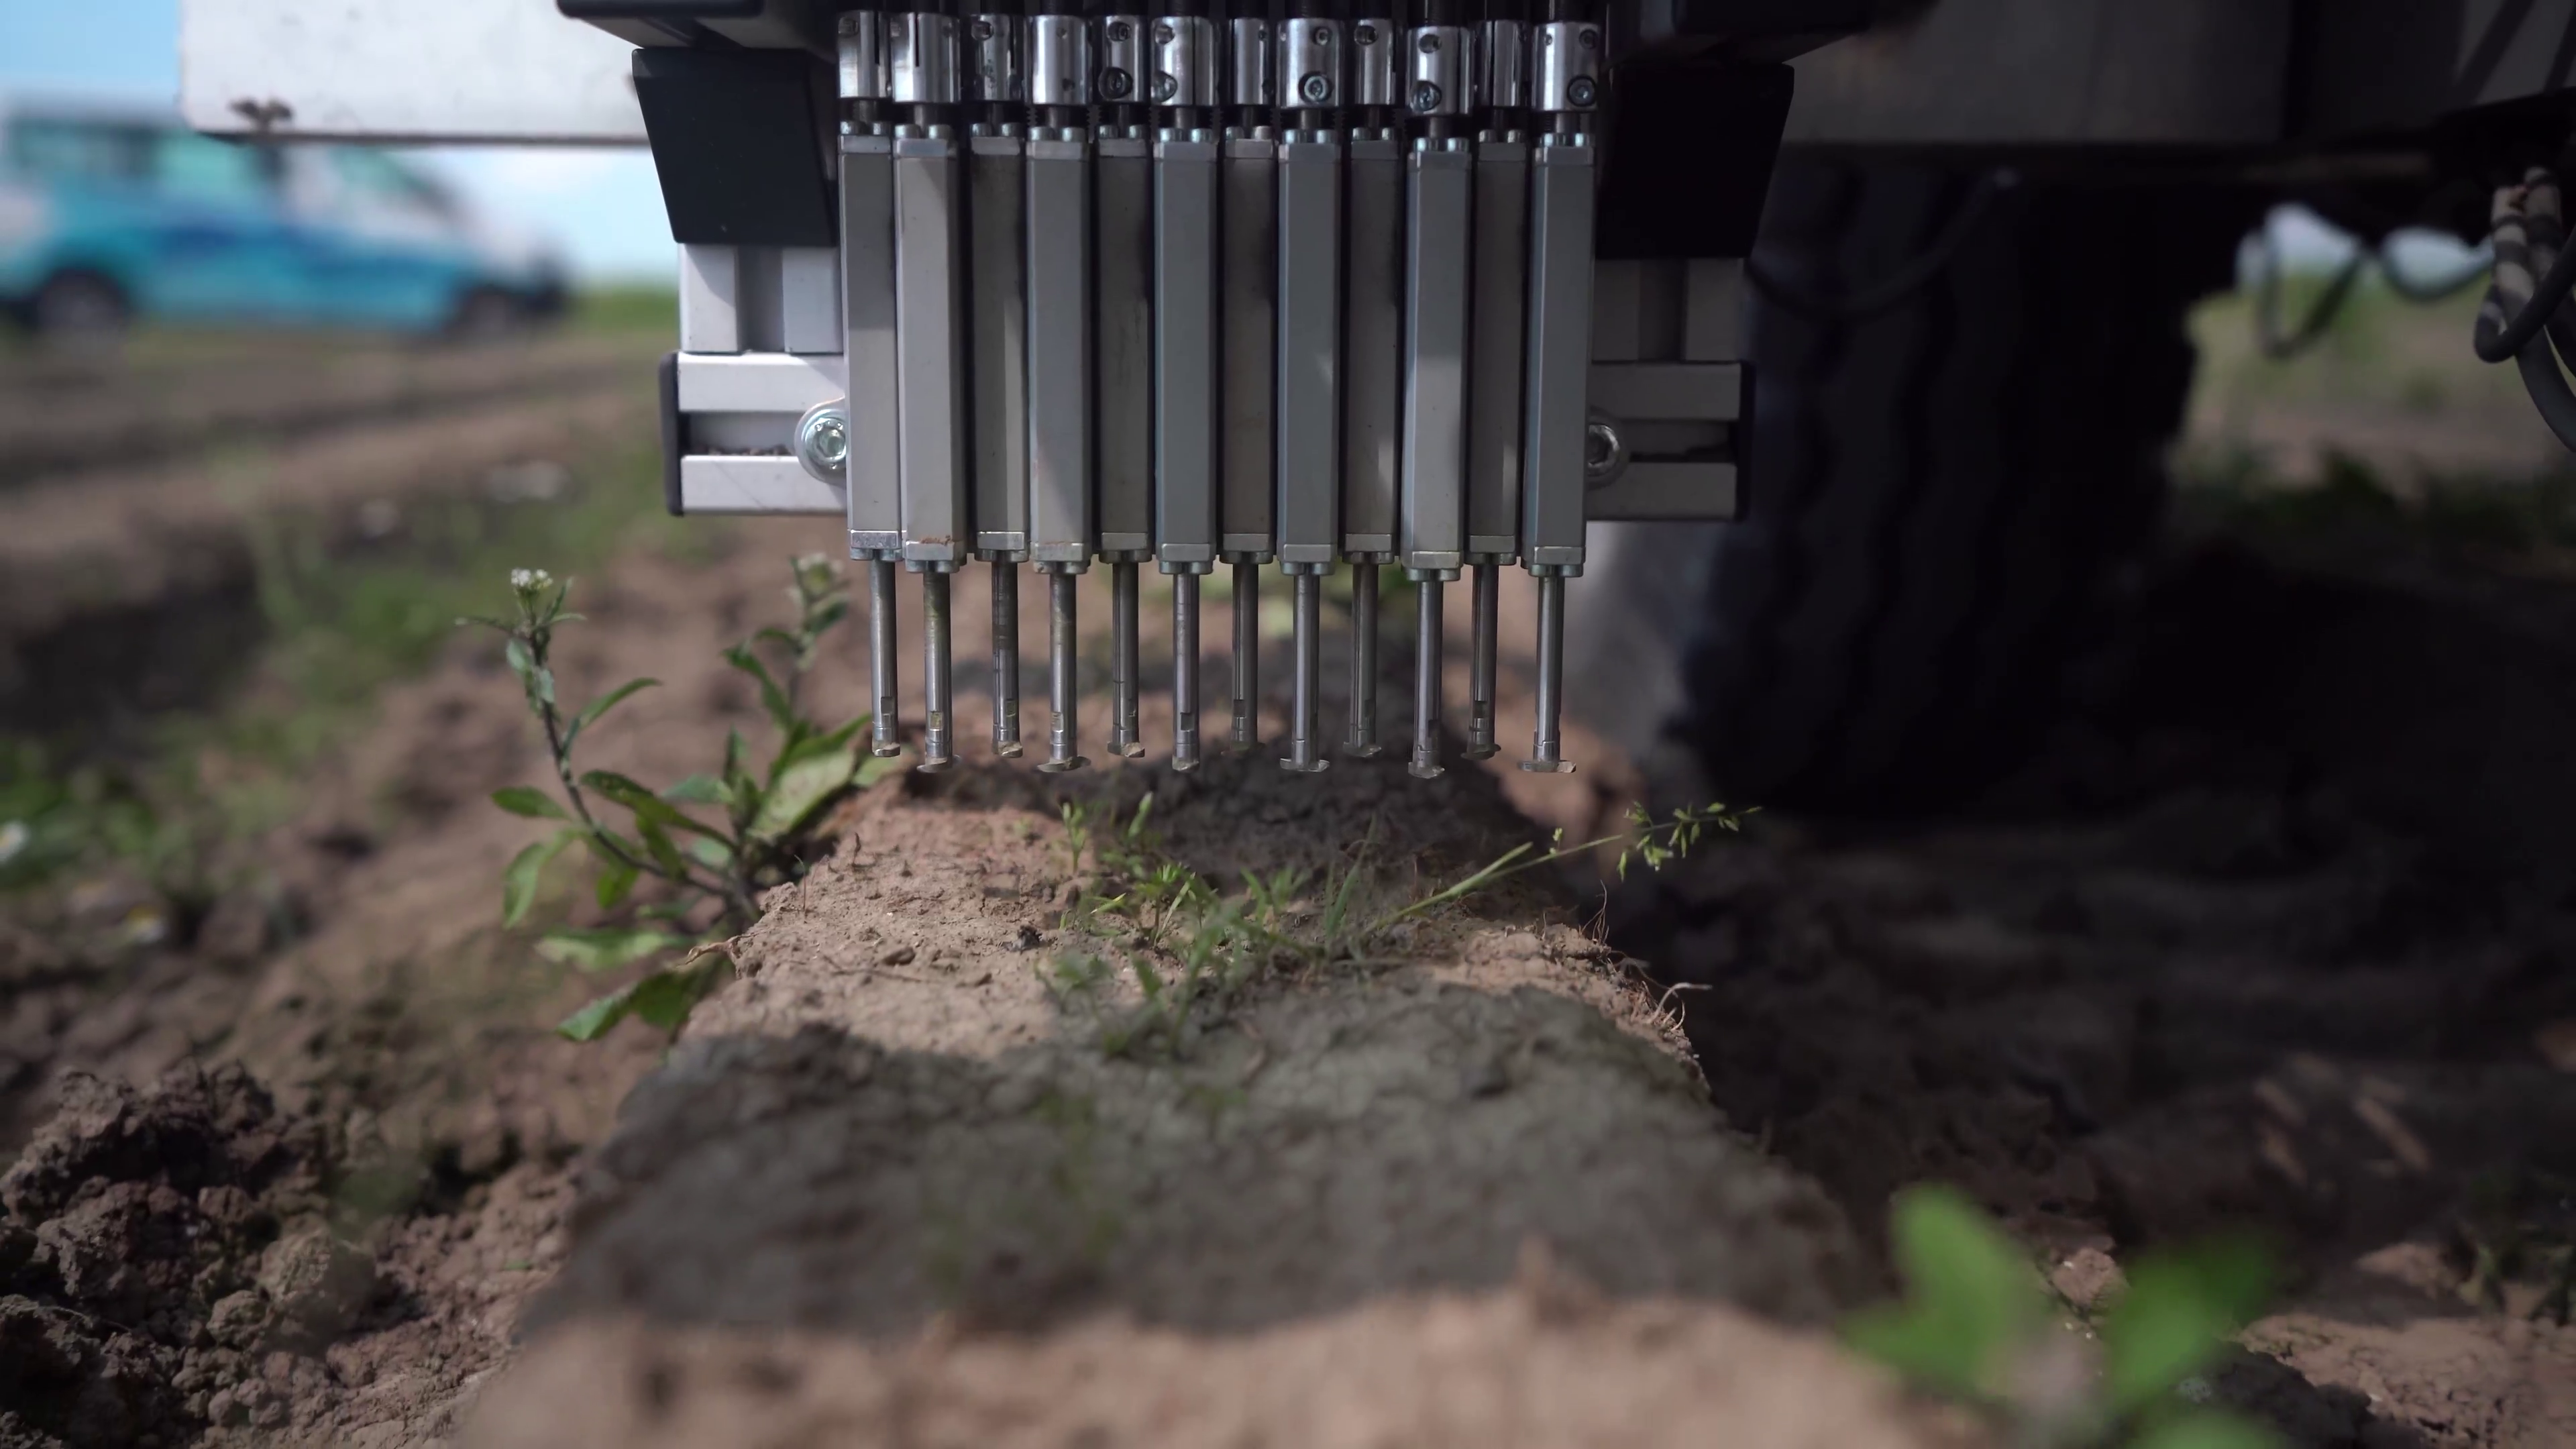 Video von intelligentem Roboter im Einsatz auf dem Feld